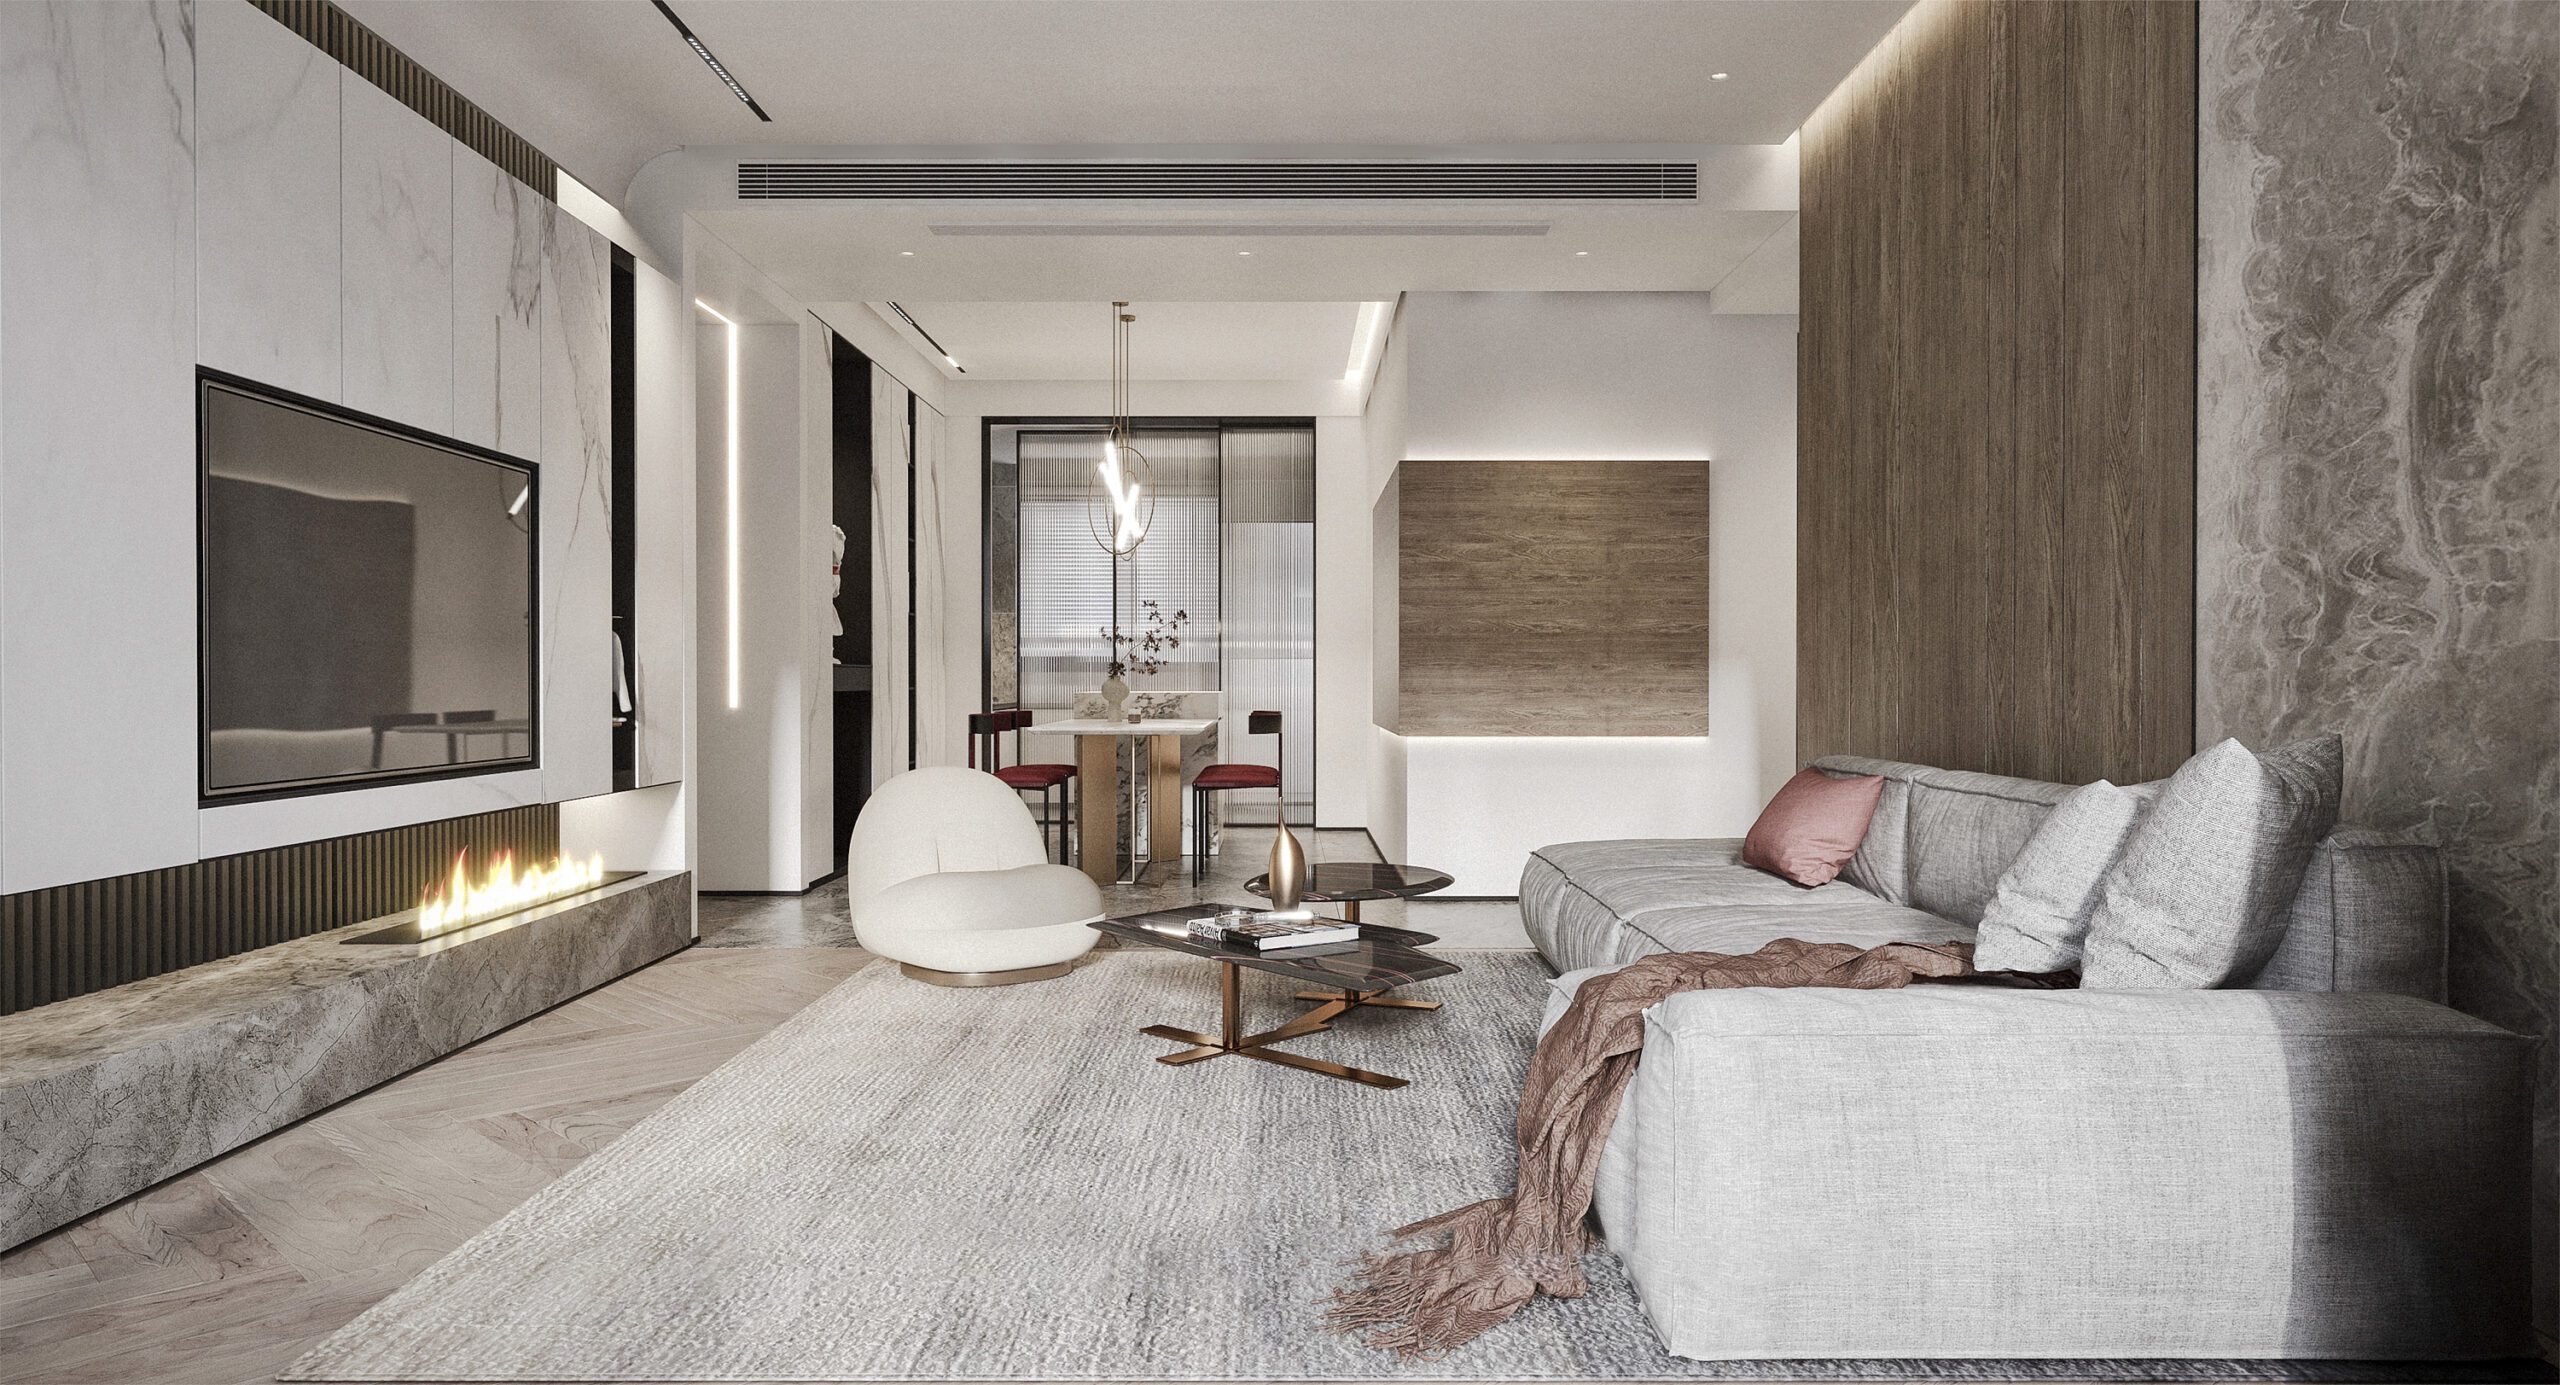 客廳設計中使用大理石、木材的經典搭配，整體空間高級精緻細膩